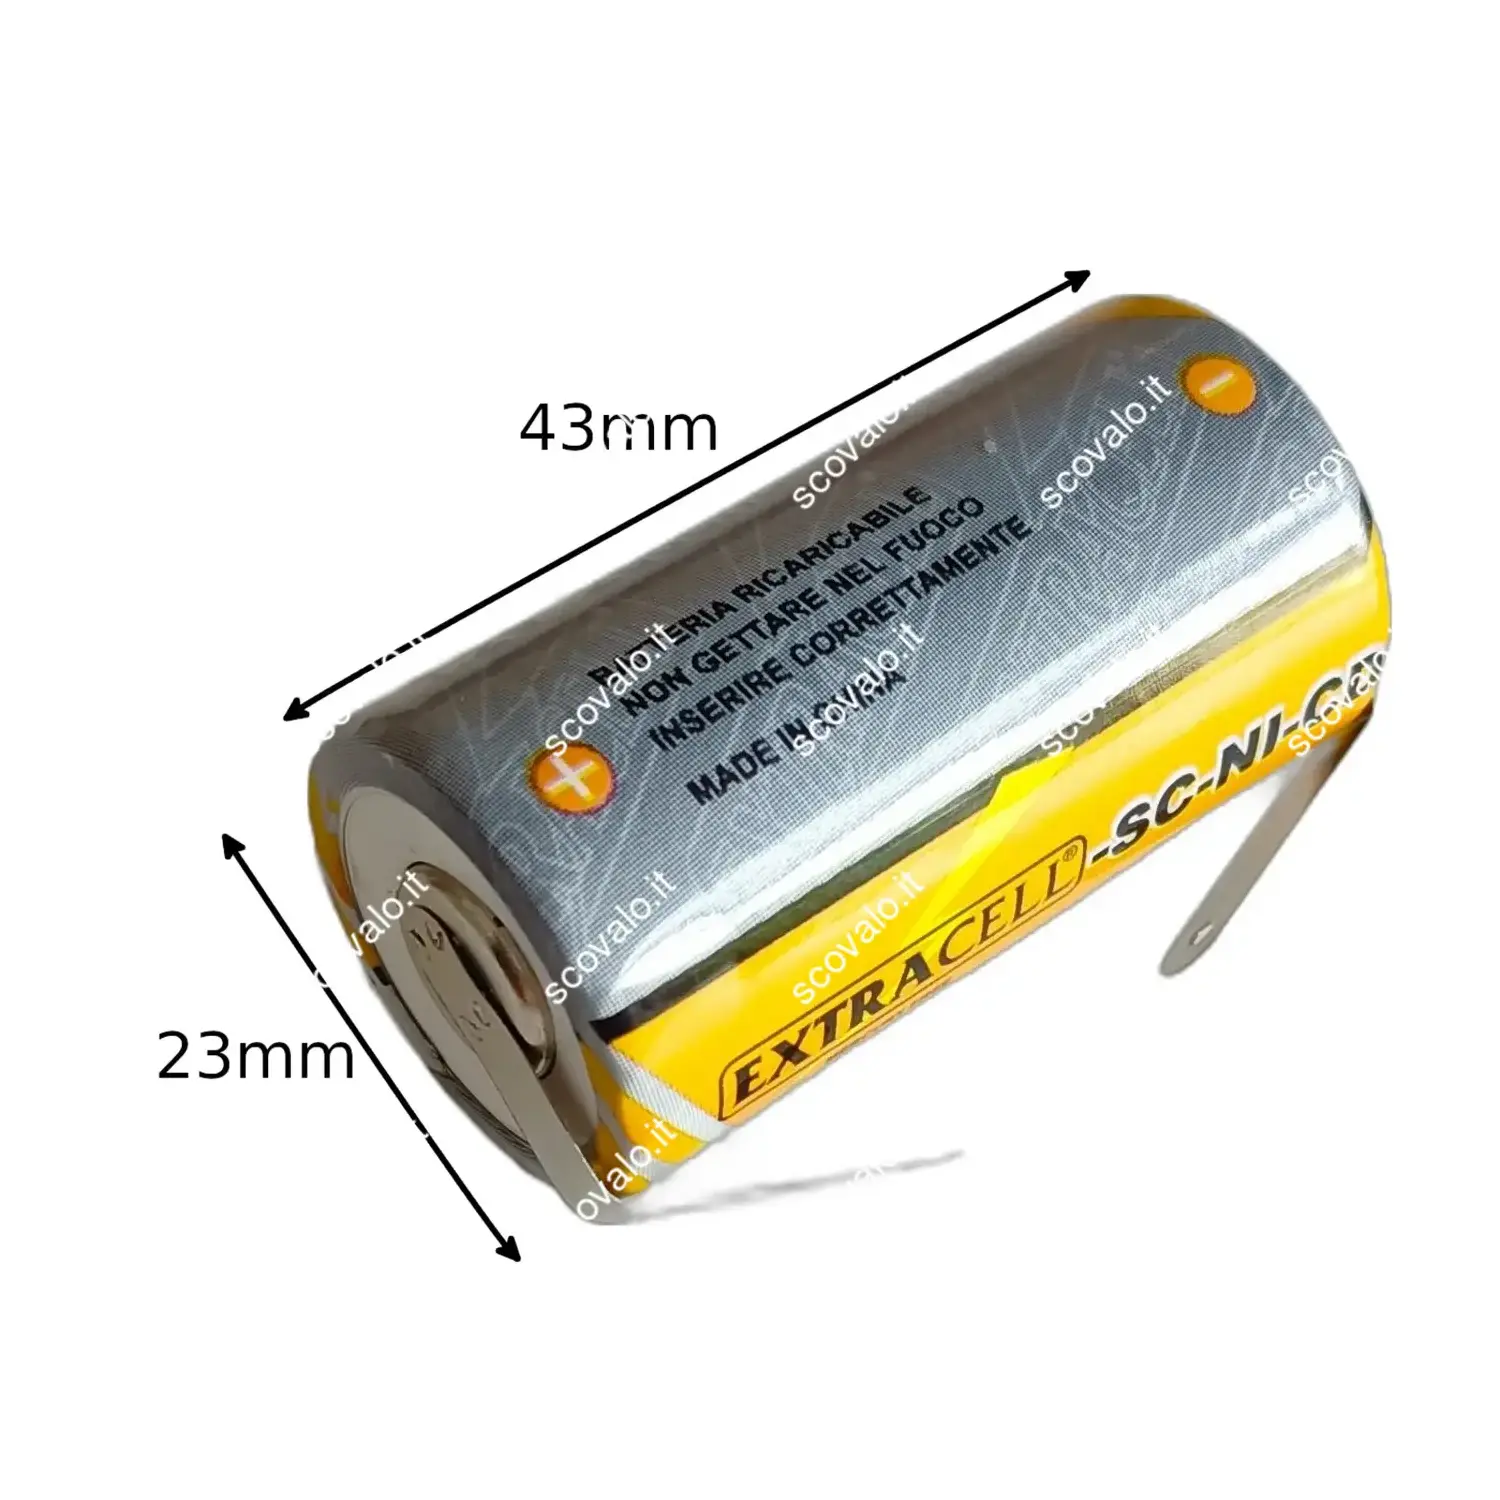 immagine batteria ricaricabile ni-cd con lamelle 2000mAh 22x42mm sc 1,2 volt